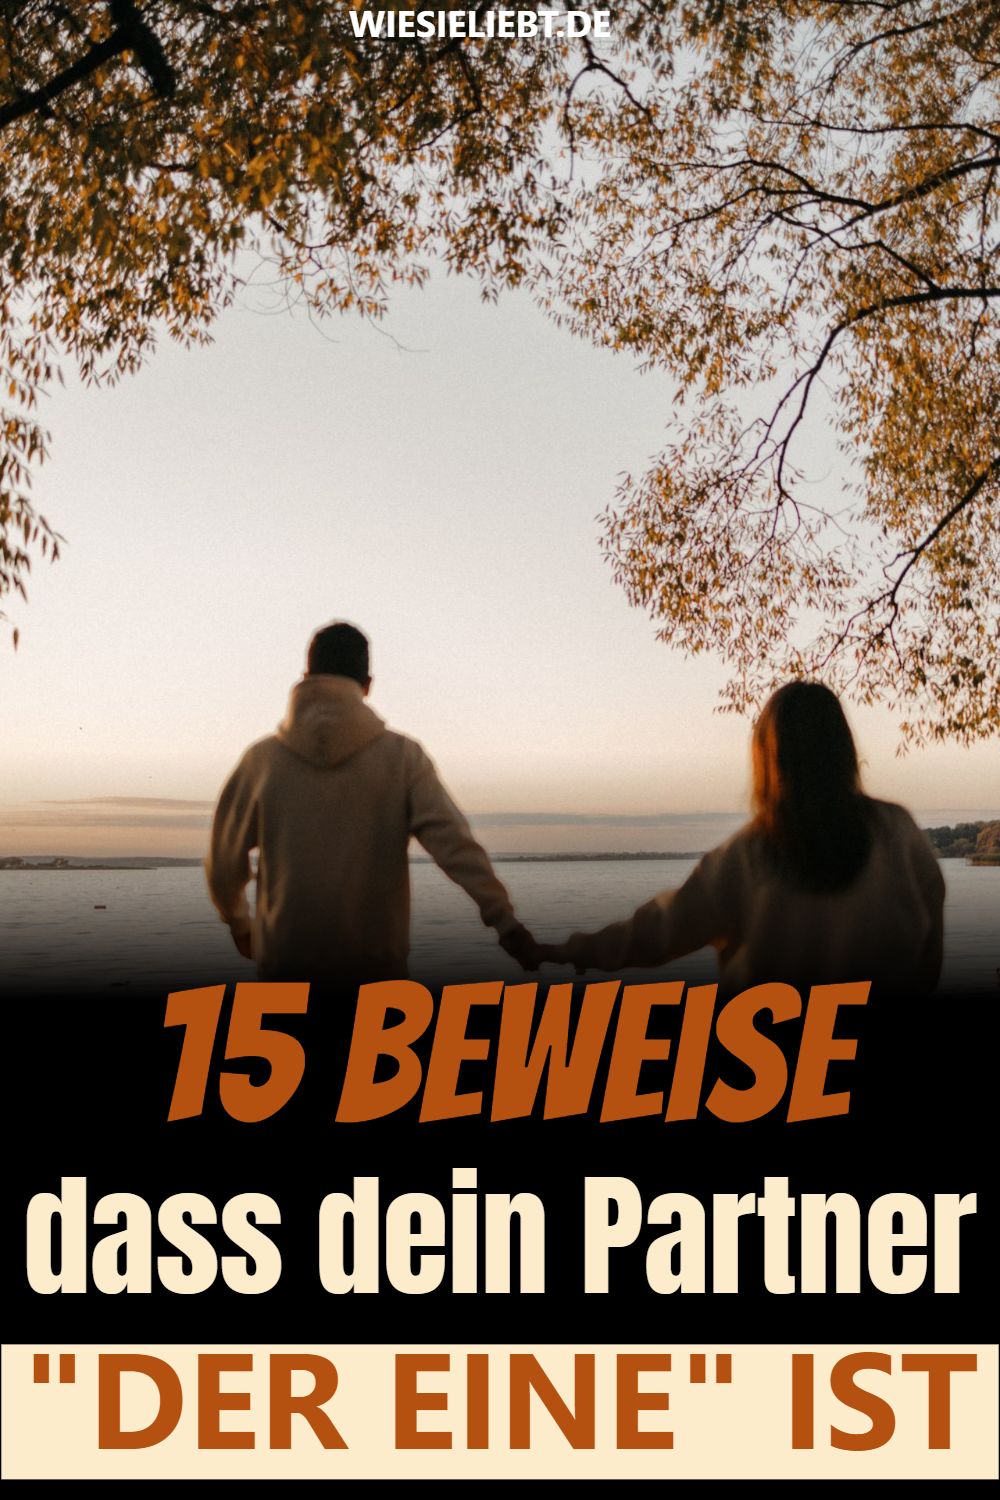 15 Beweise dass dein Partner "DER EINE" IST